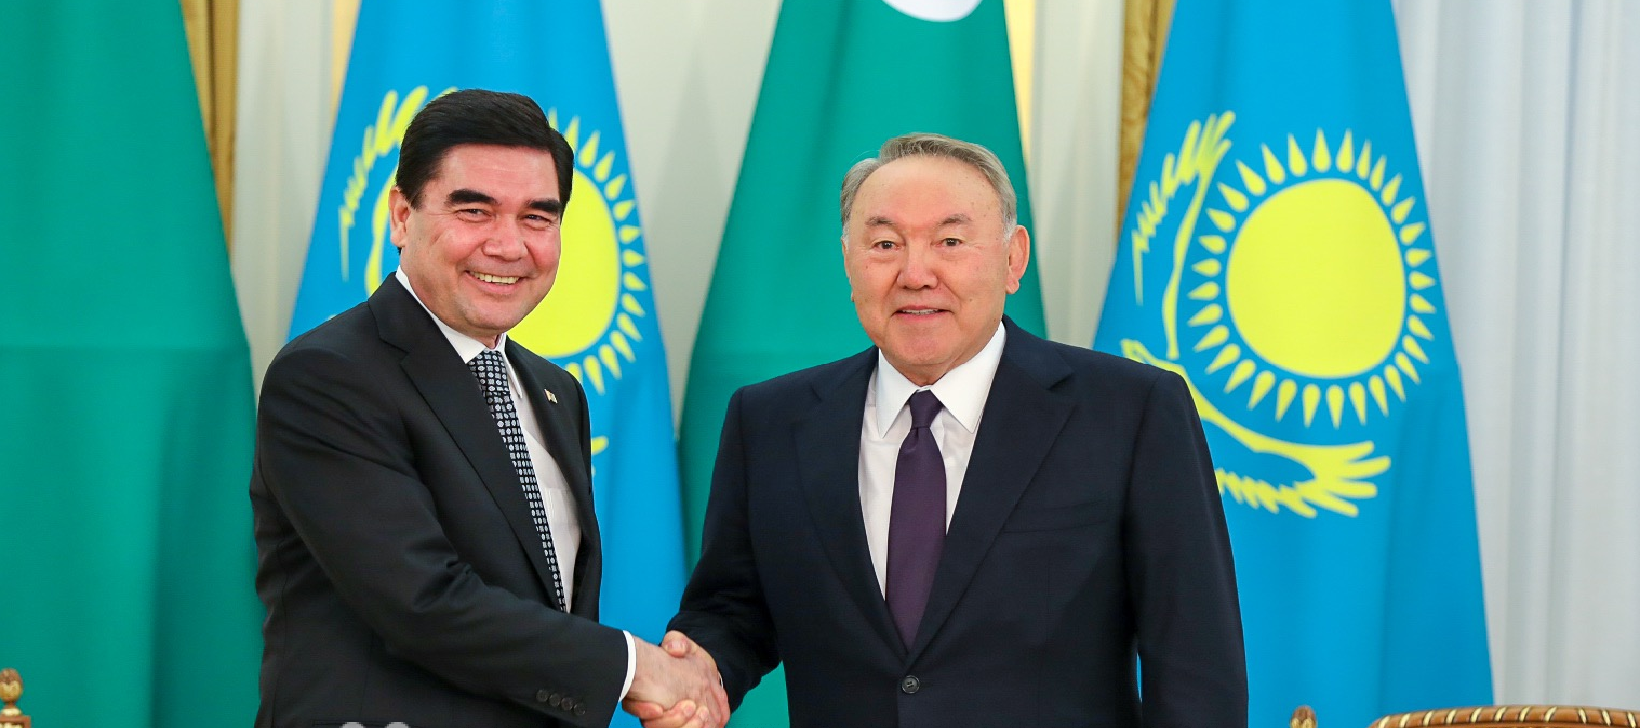 Нурсултан Назарбаев: «Туркменистан является важным партнером и союзником Казахстана в регионе»